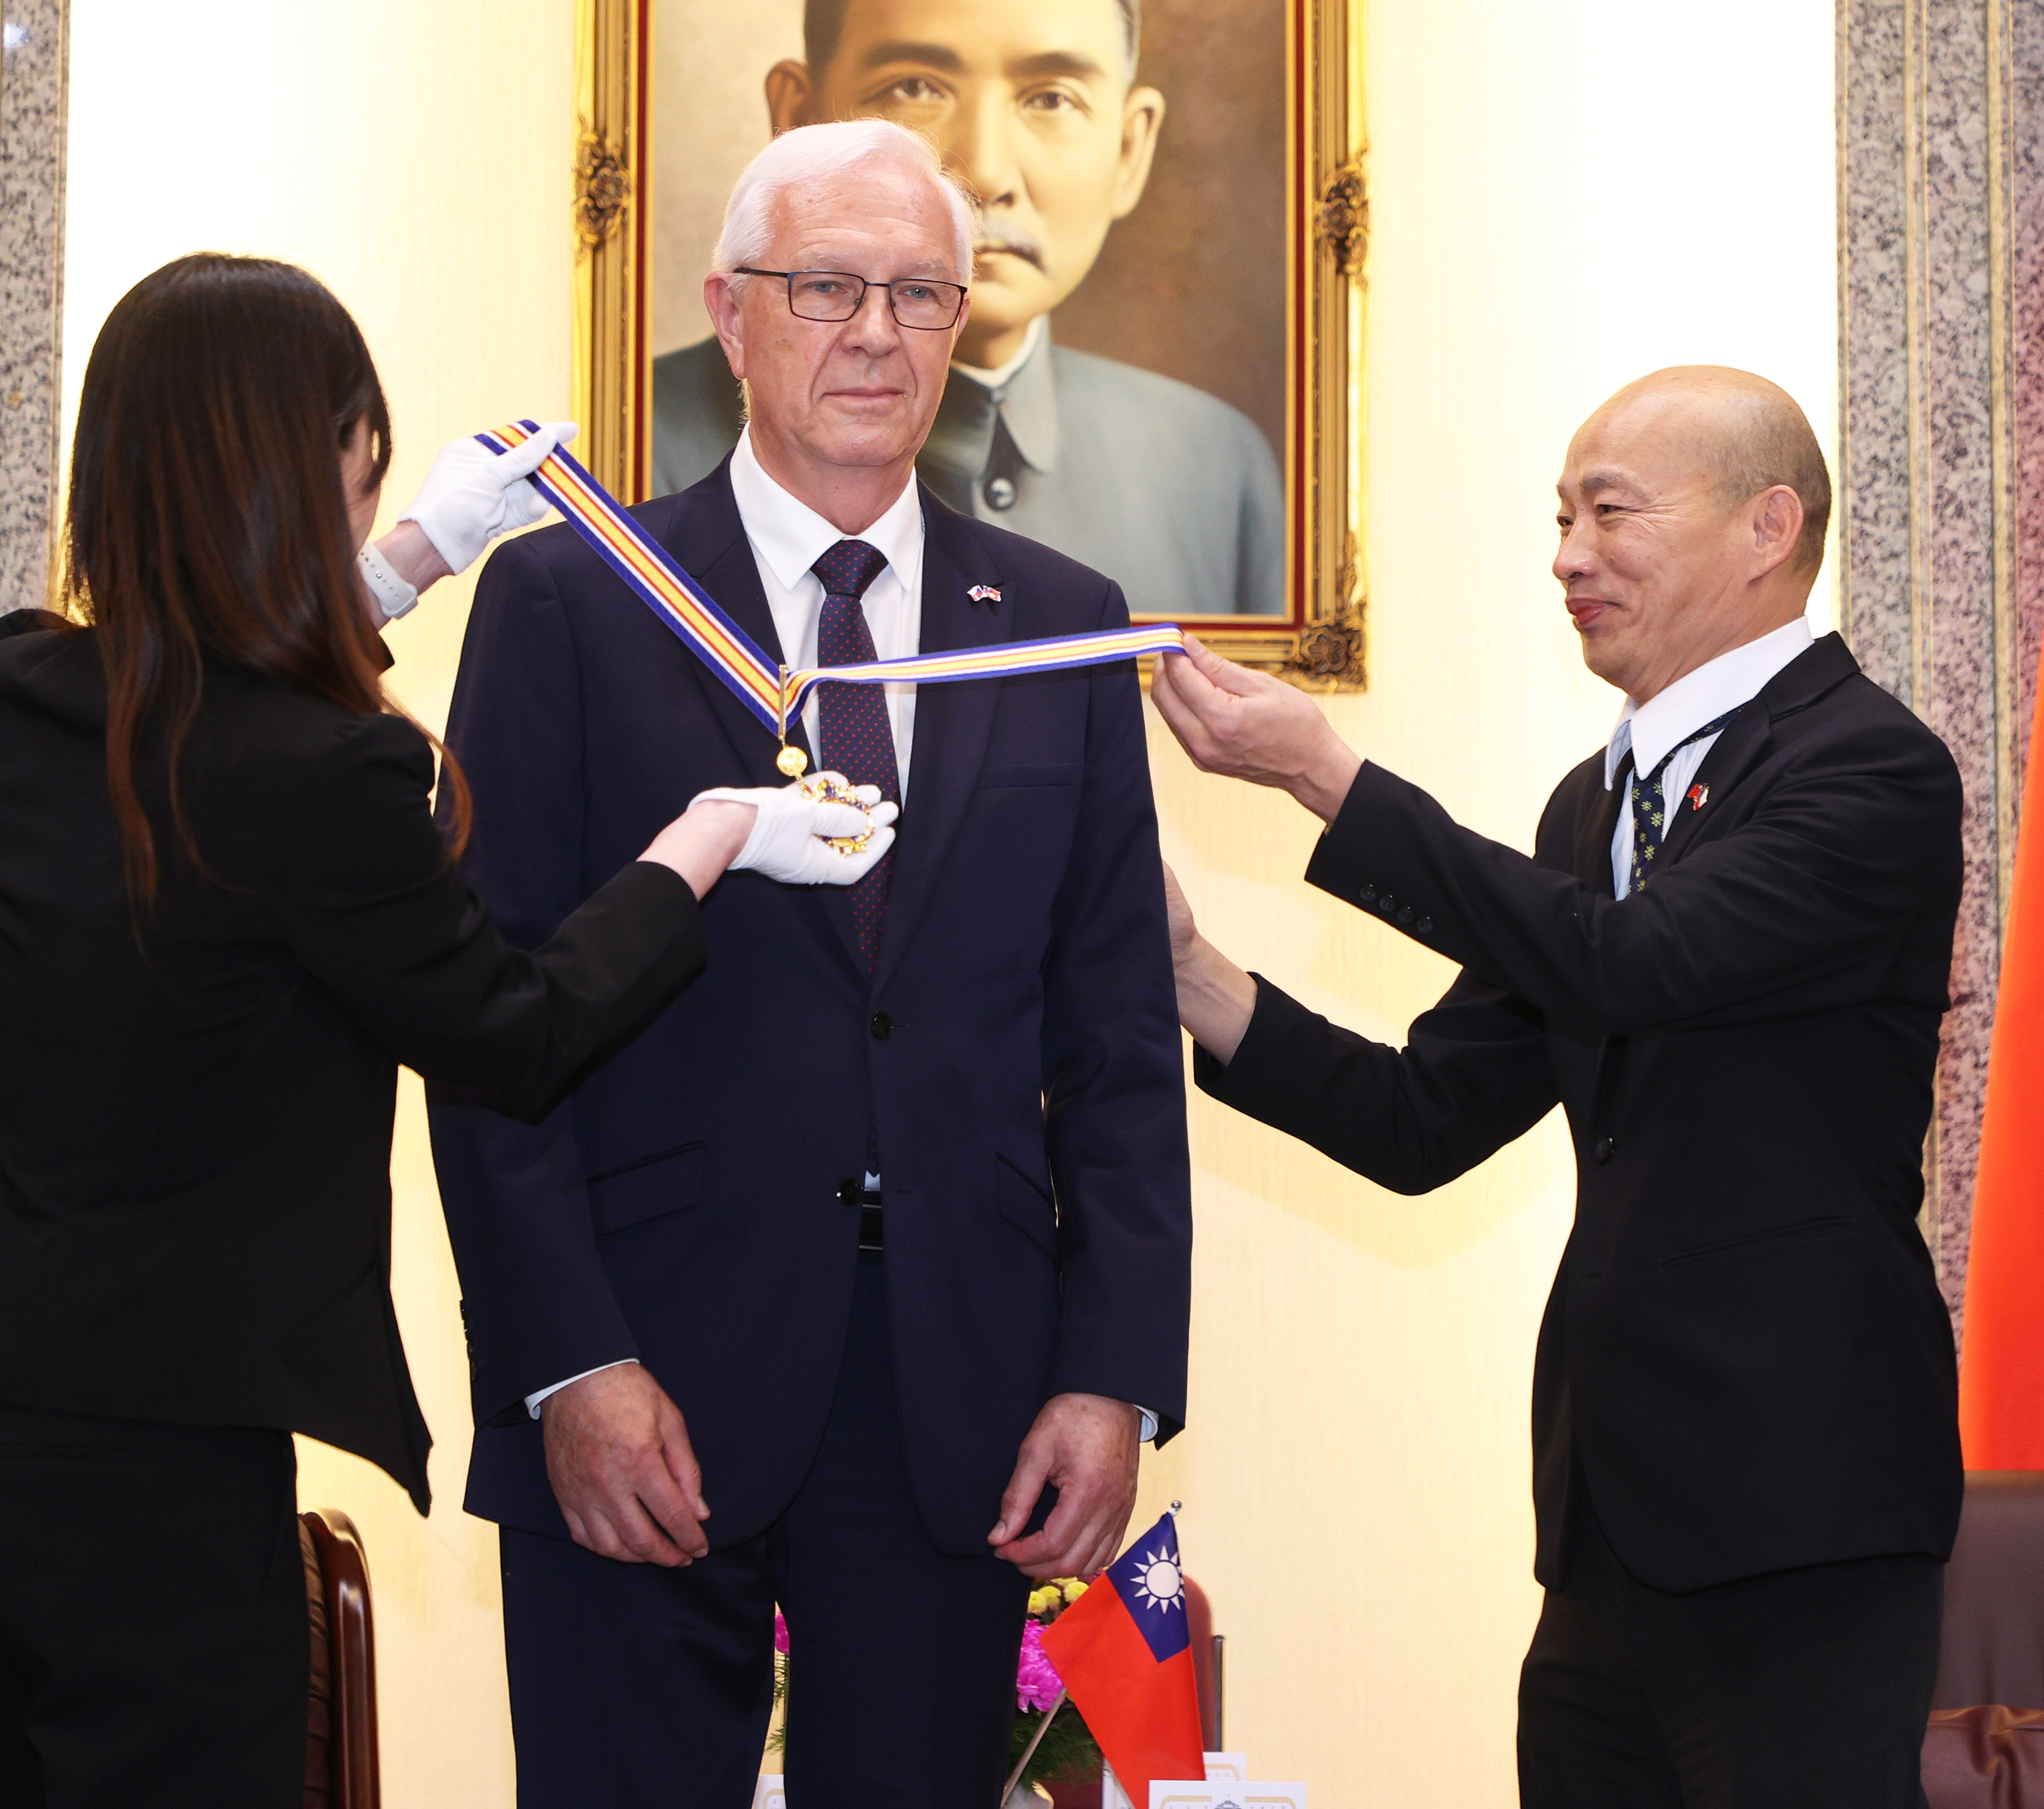 立法院长韩国瑜（右）今天颁赠国会荣誉一等奖章及证书给第四度来台参访的捷克参议院首席副议长德拉霍斯（中），表彰对台捷友好邦谊的贡献。记者潘俊宏／摄影